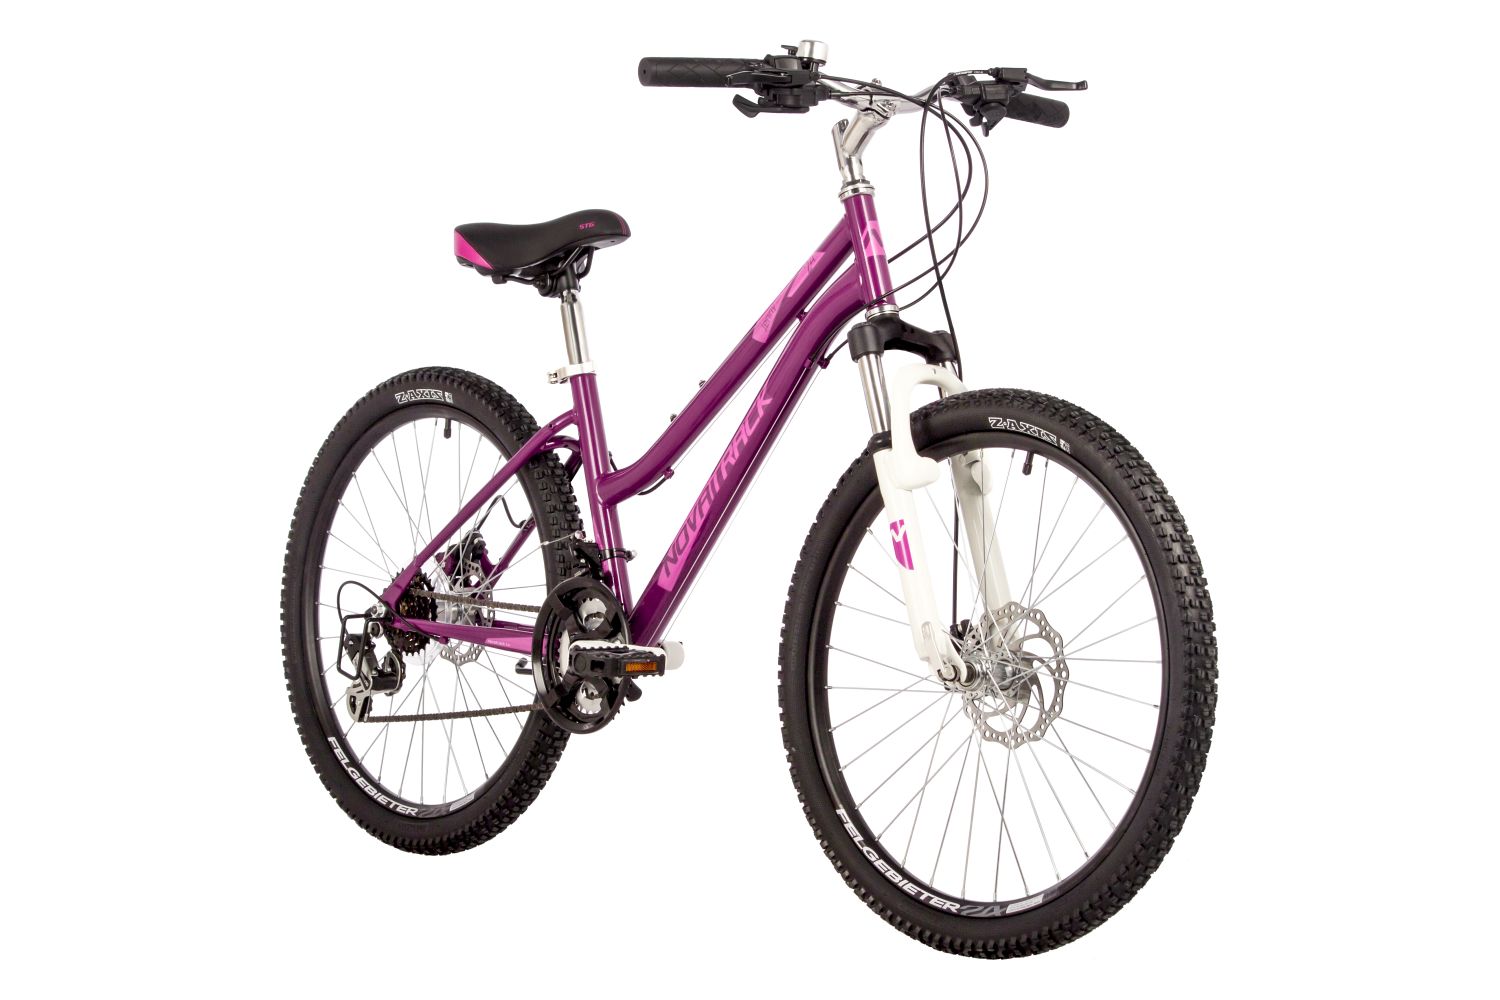 Подростковый велосипед Novatrack Jenny 24 Pro Disc, год 2023, цвет Красный, ростовка 14